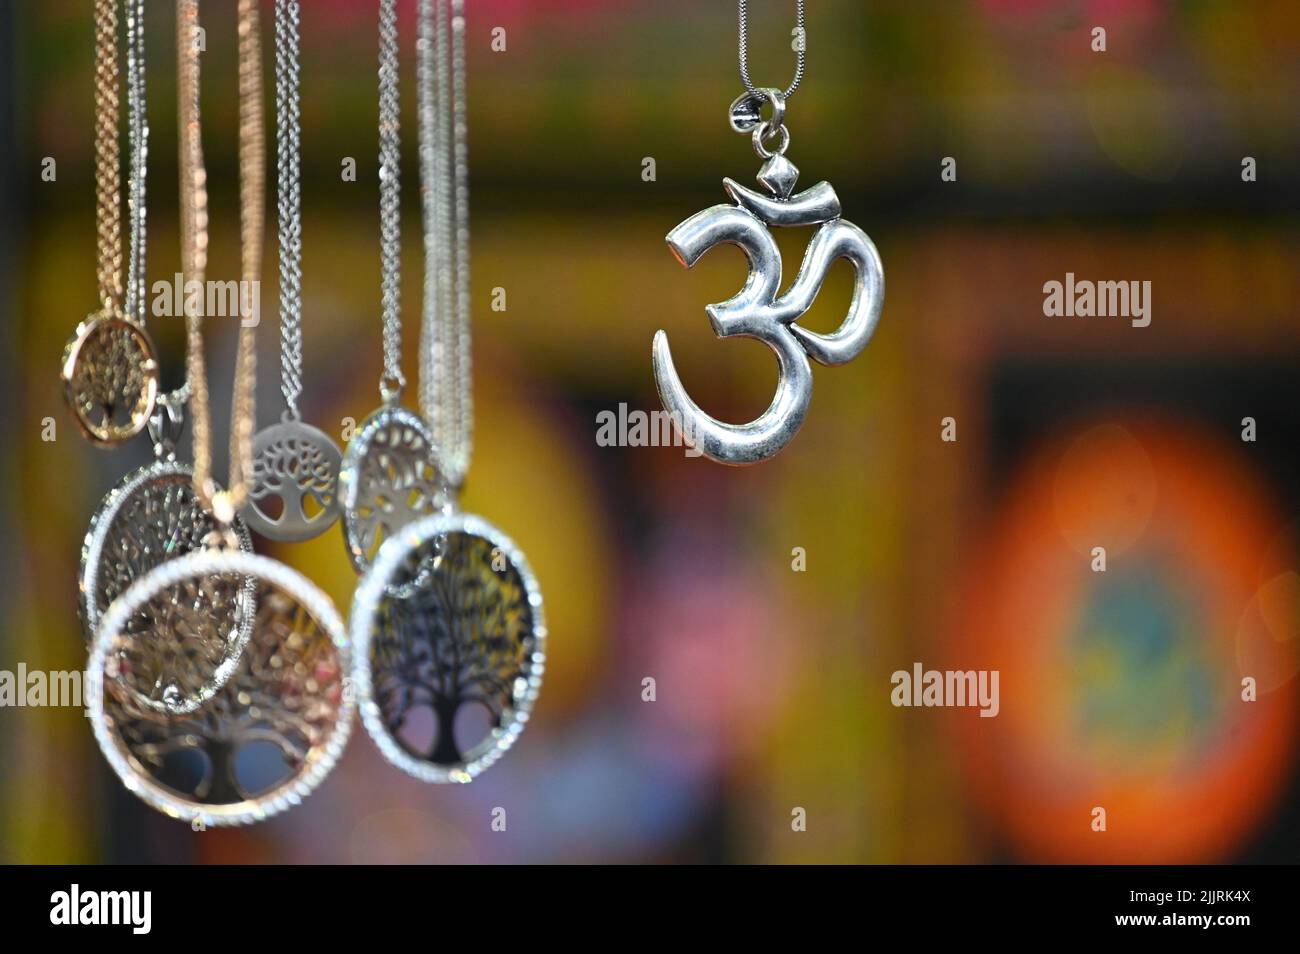 Eine flache Fokusaufnahme des AUM-Zeichens, das das Universum und die ultimative Realität in der hinduistischen Religion symbolisiert Stockfoto